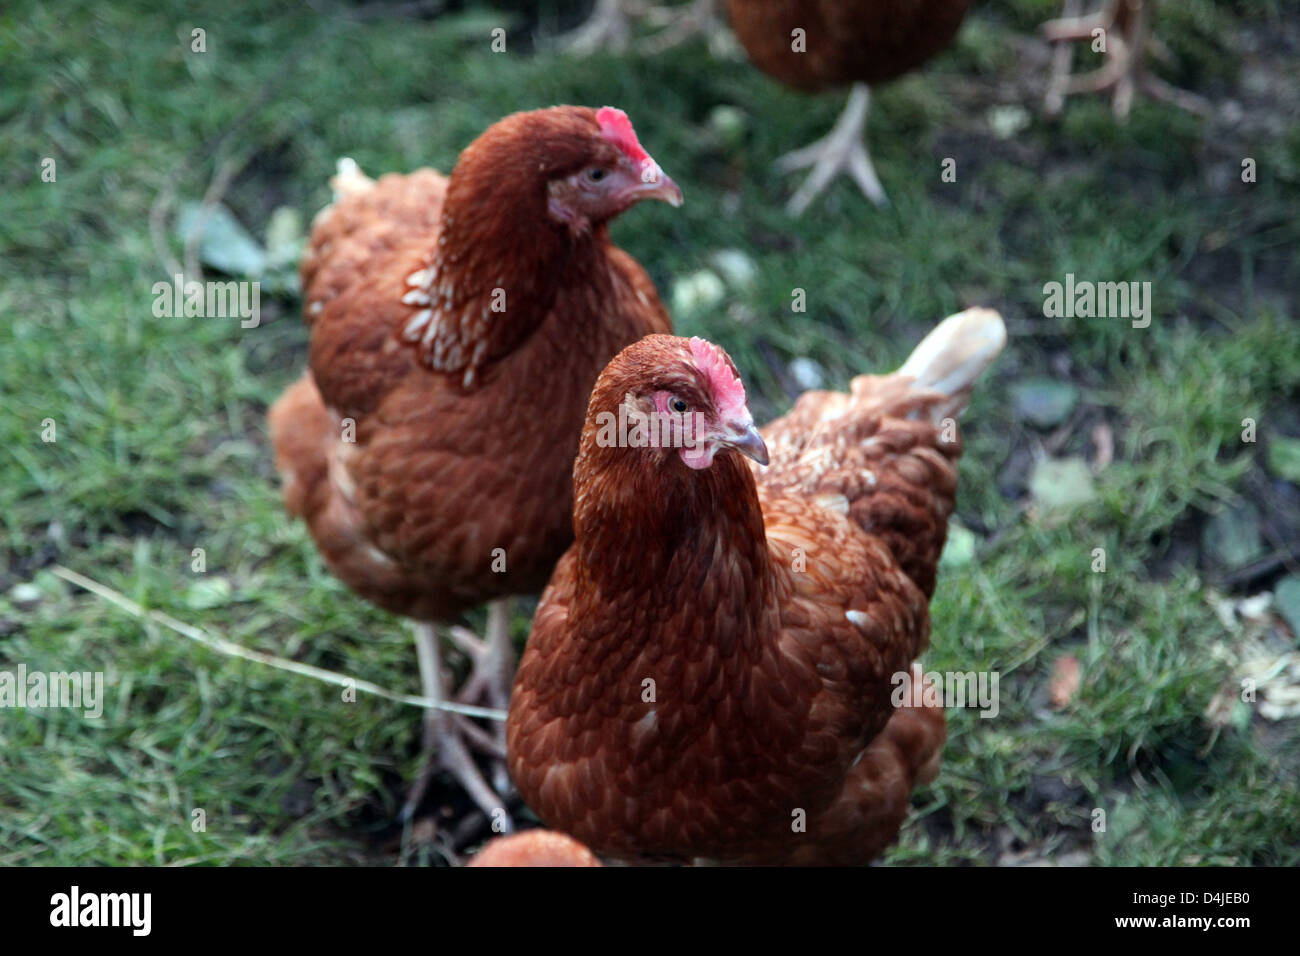 Si tratta di una foto di polli marrone che sono in un campo verde in una fattoria. Si tratta di una stalla o una coop. Essi sono nel gruppo insieme Foto Stock